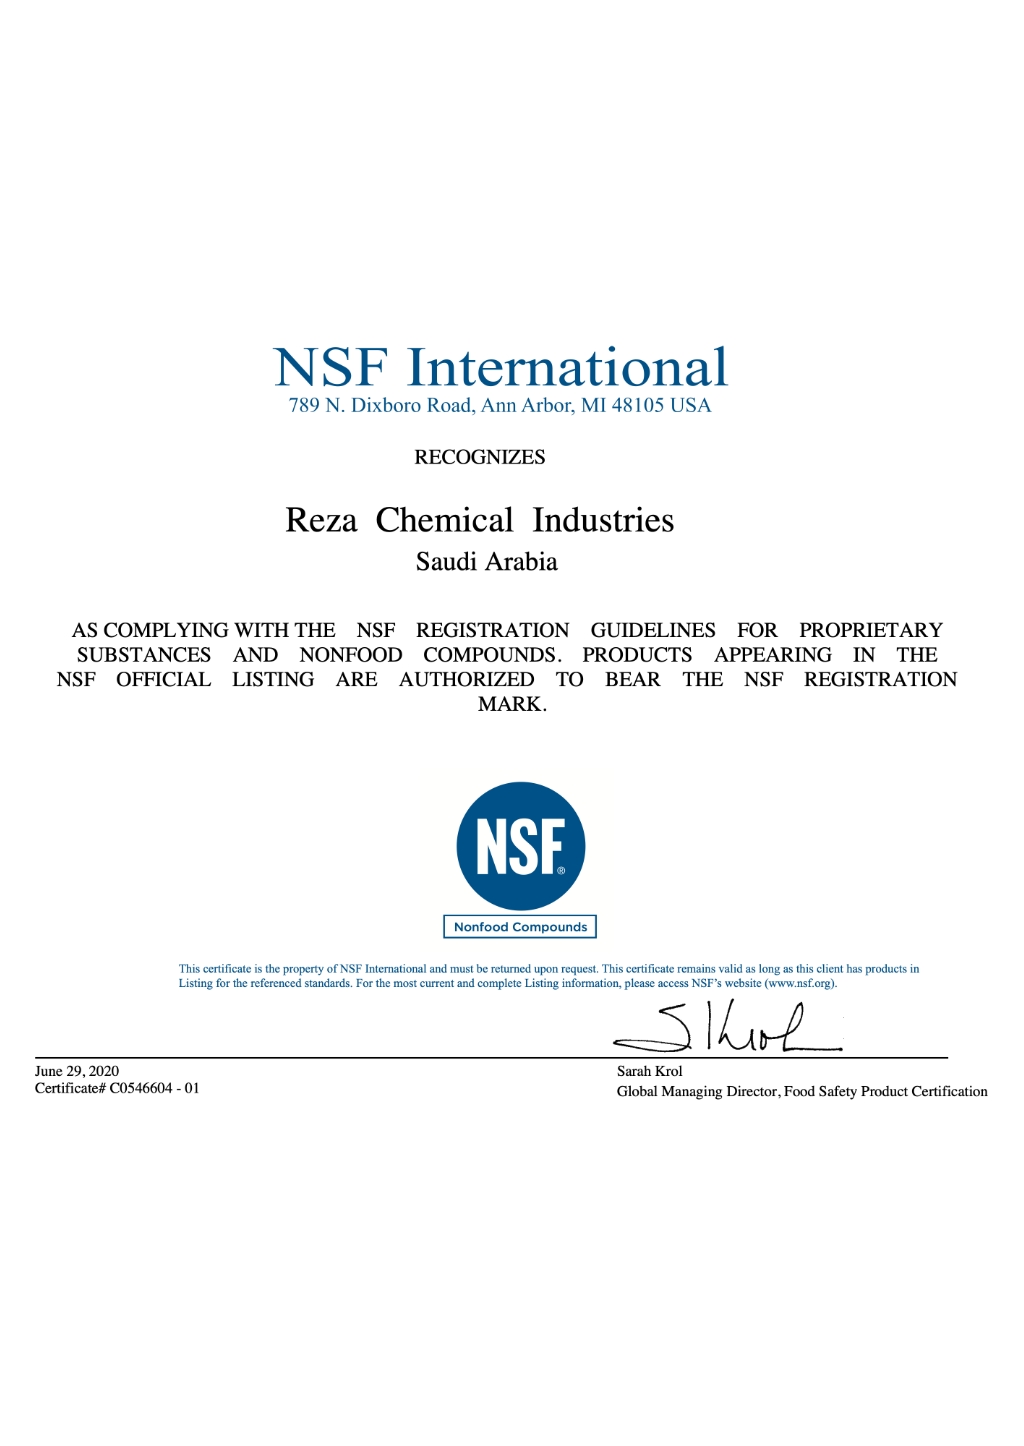 NFS Nonfood Compounds C0546604